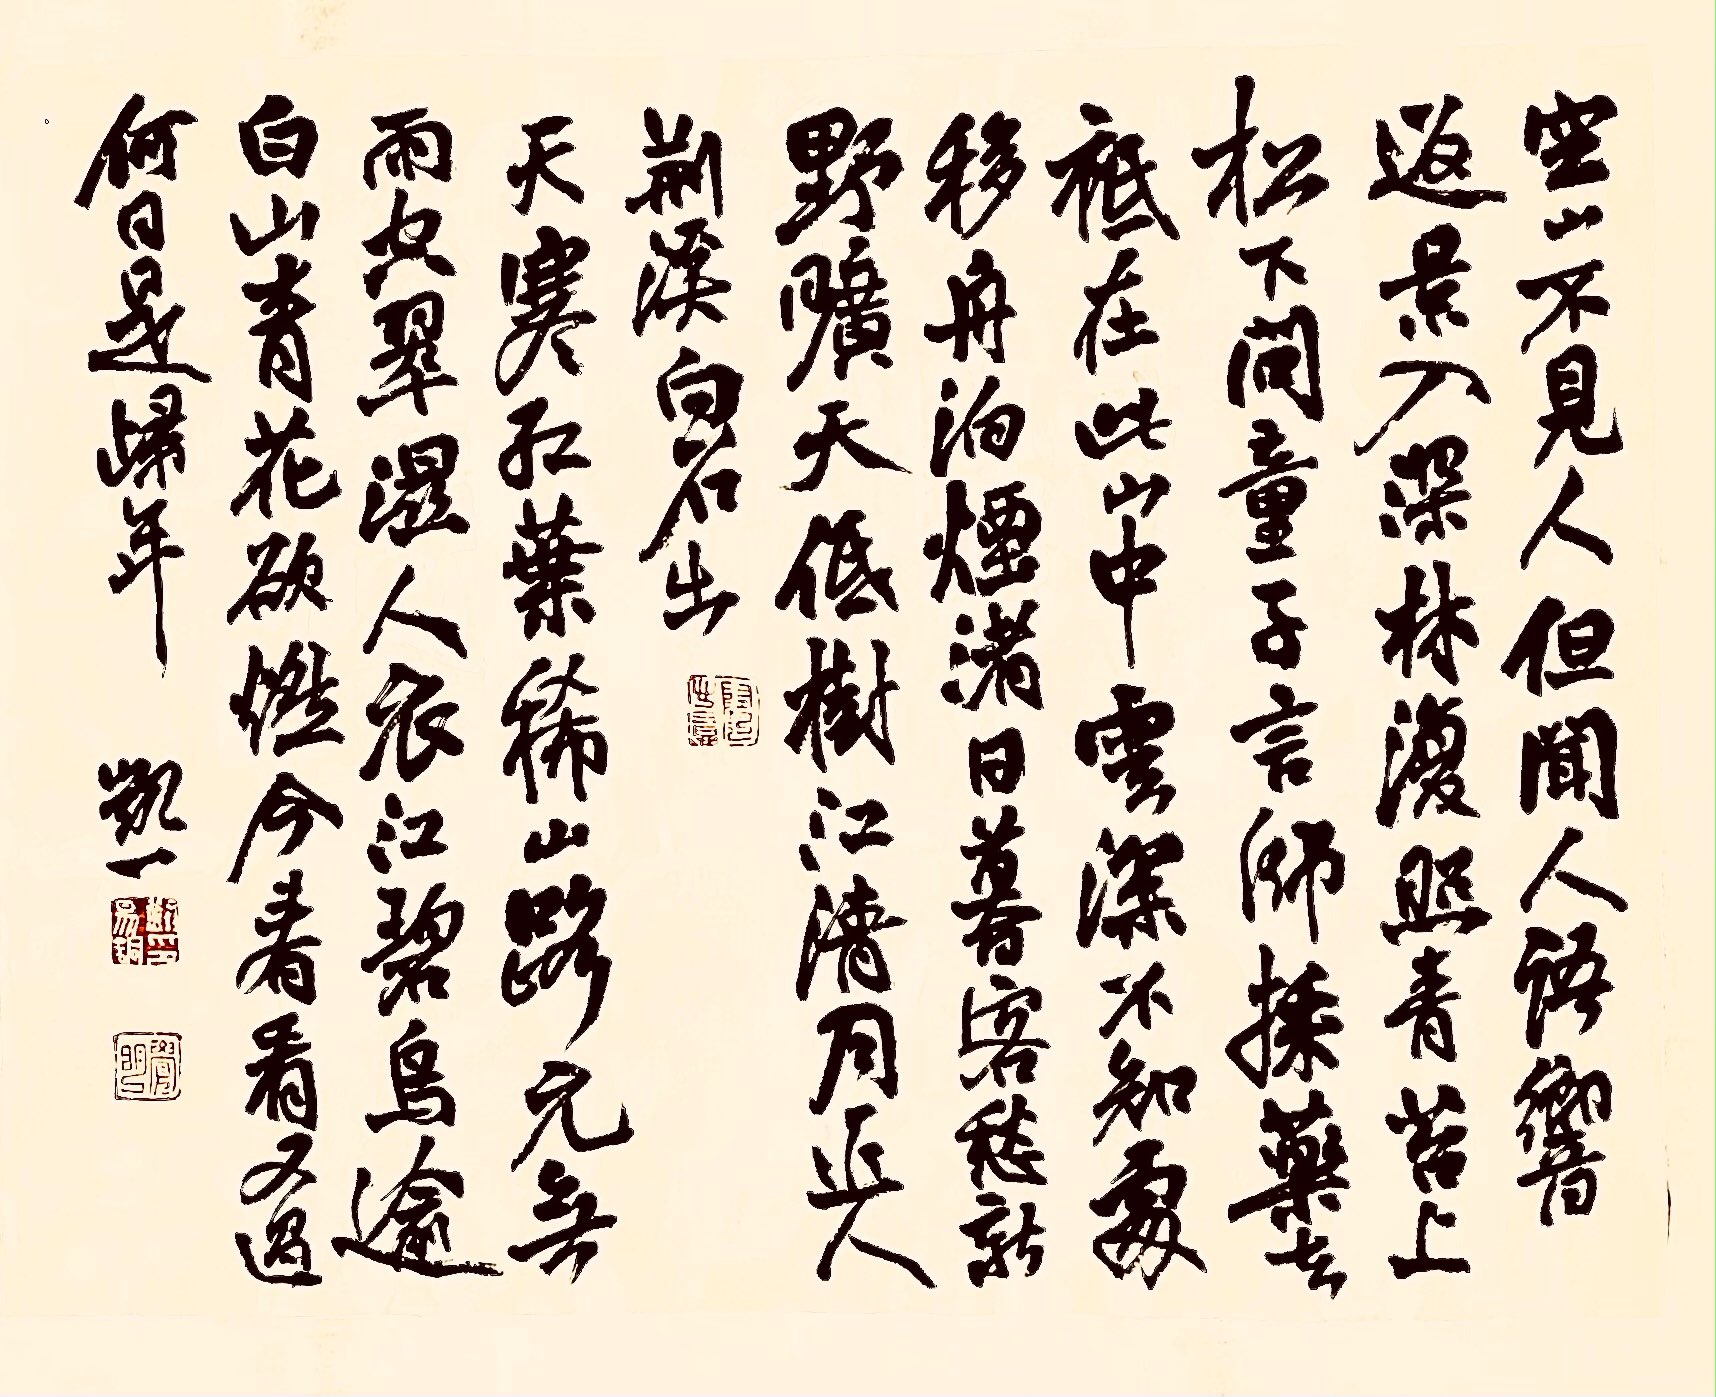 书法漫谈】中国书法的神性特点| 汉字| 汉字书法| 刘锡铜| 大纪元 image